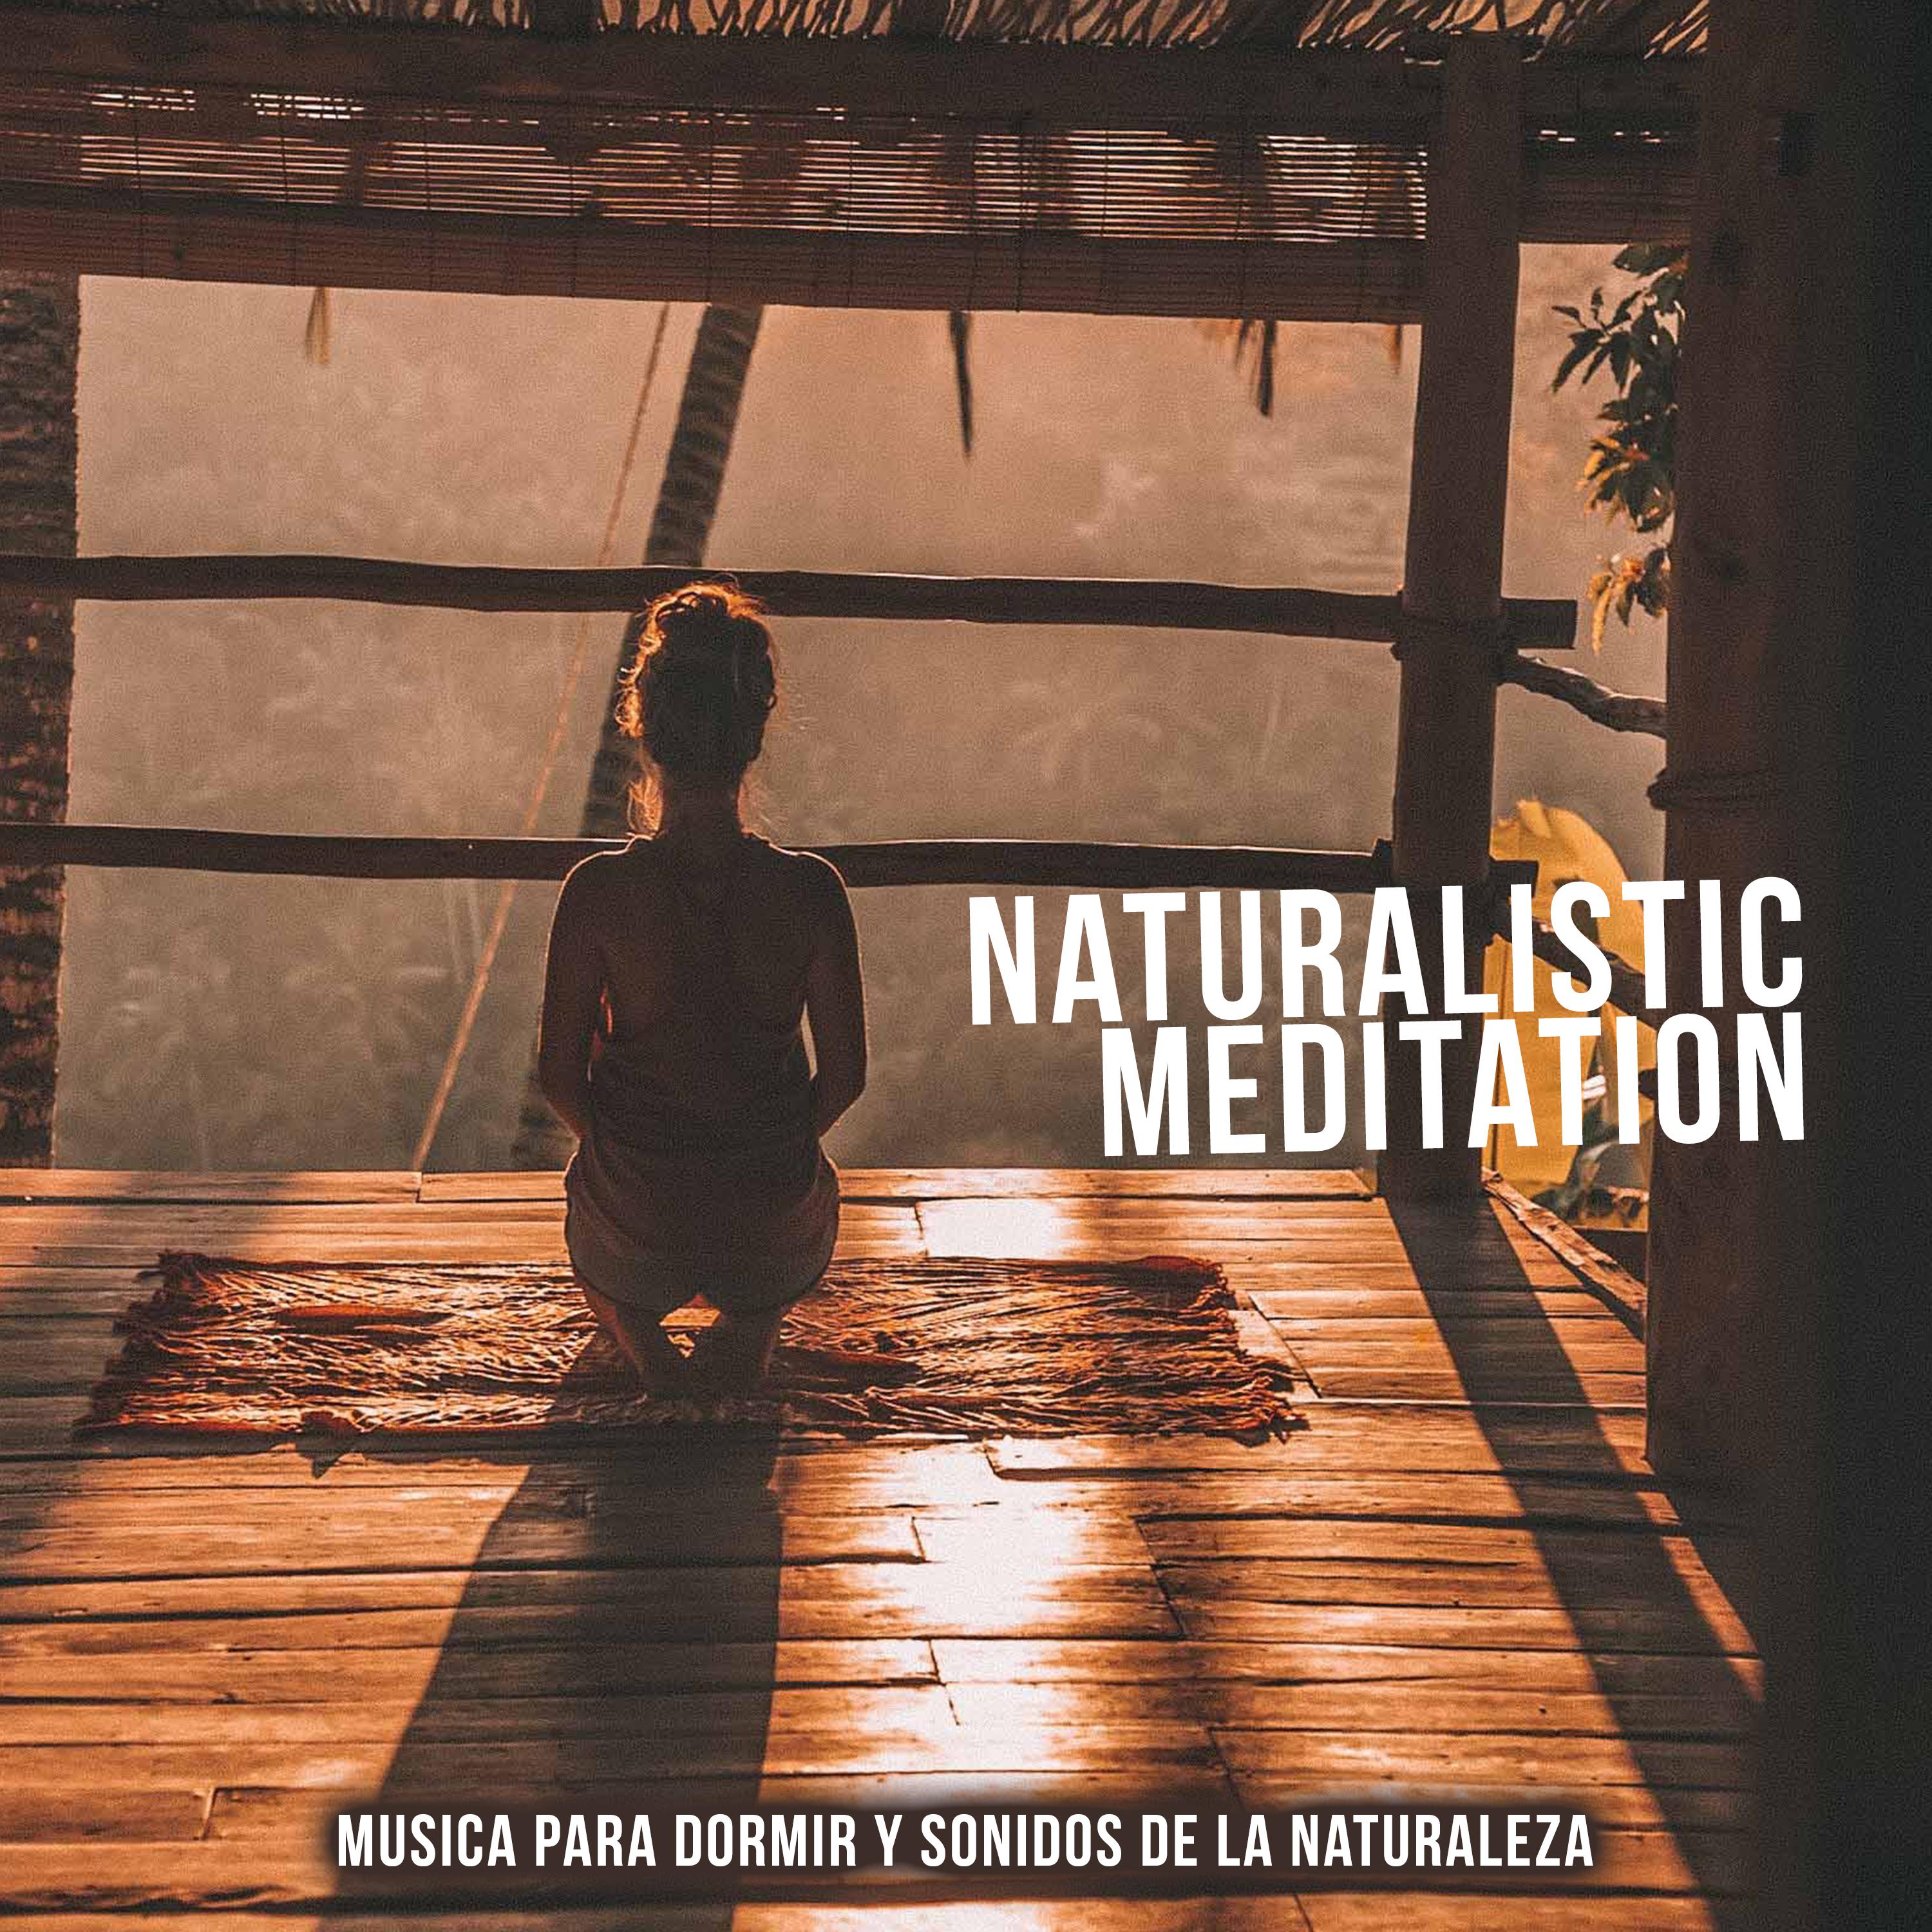 Naturalistic Meditation